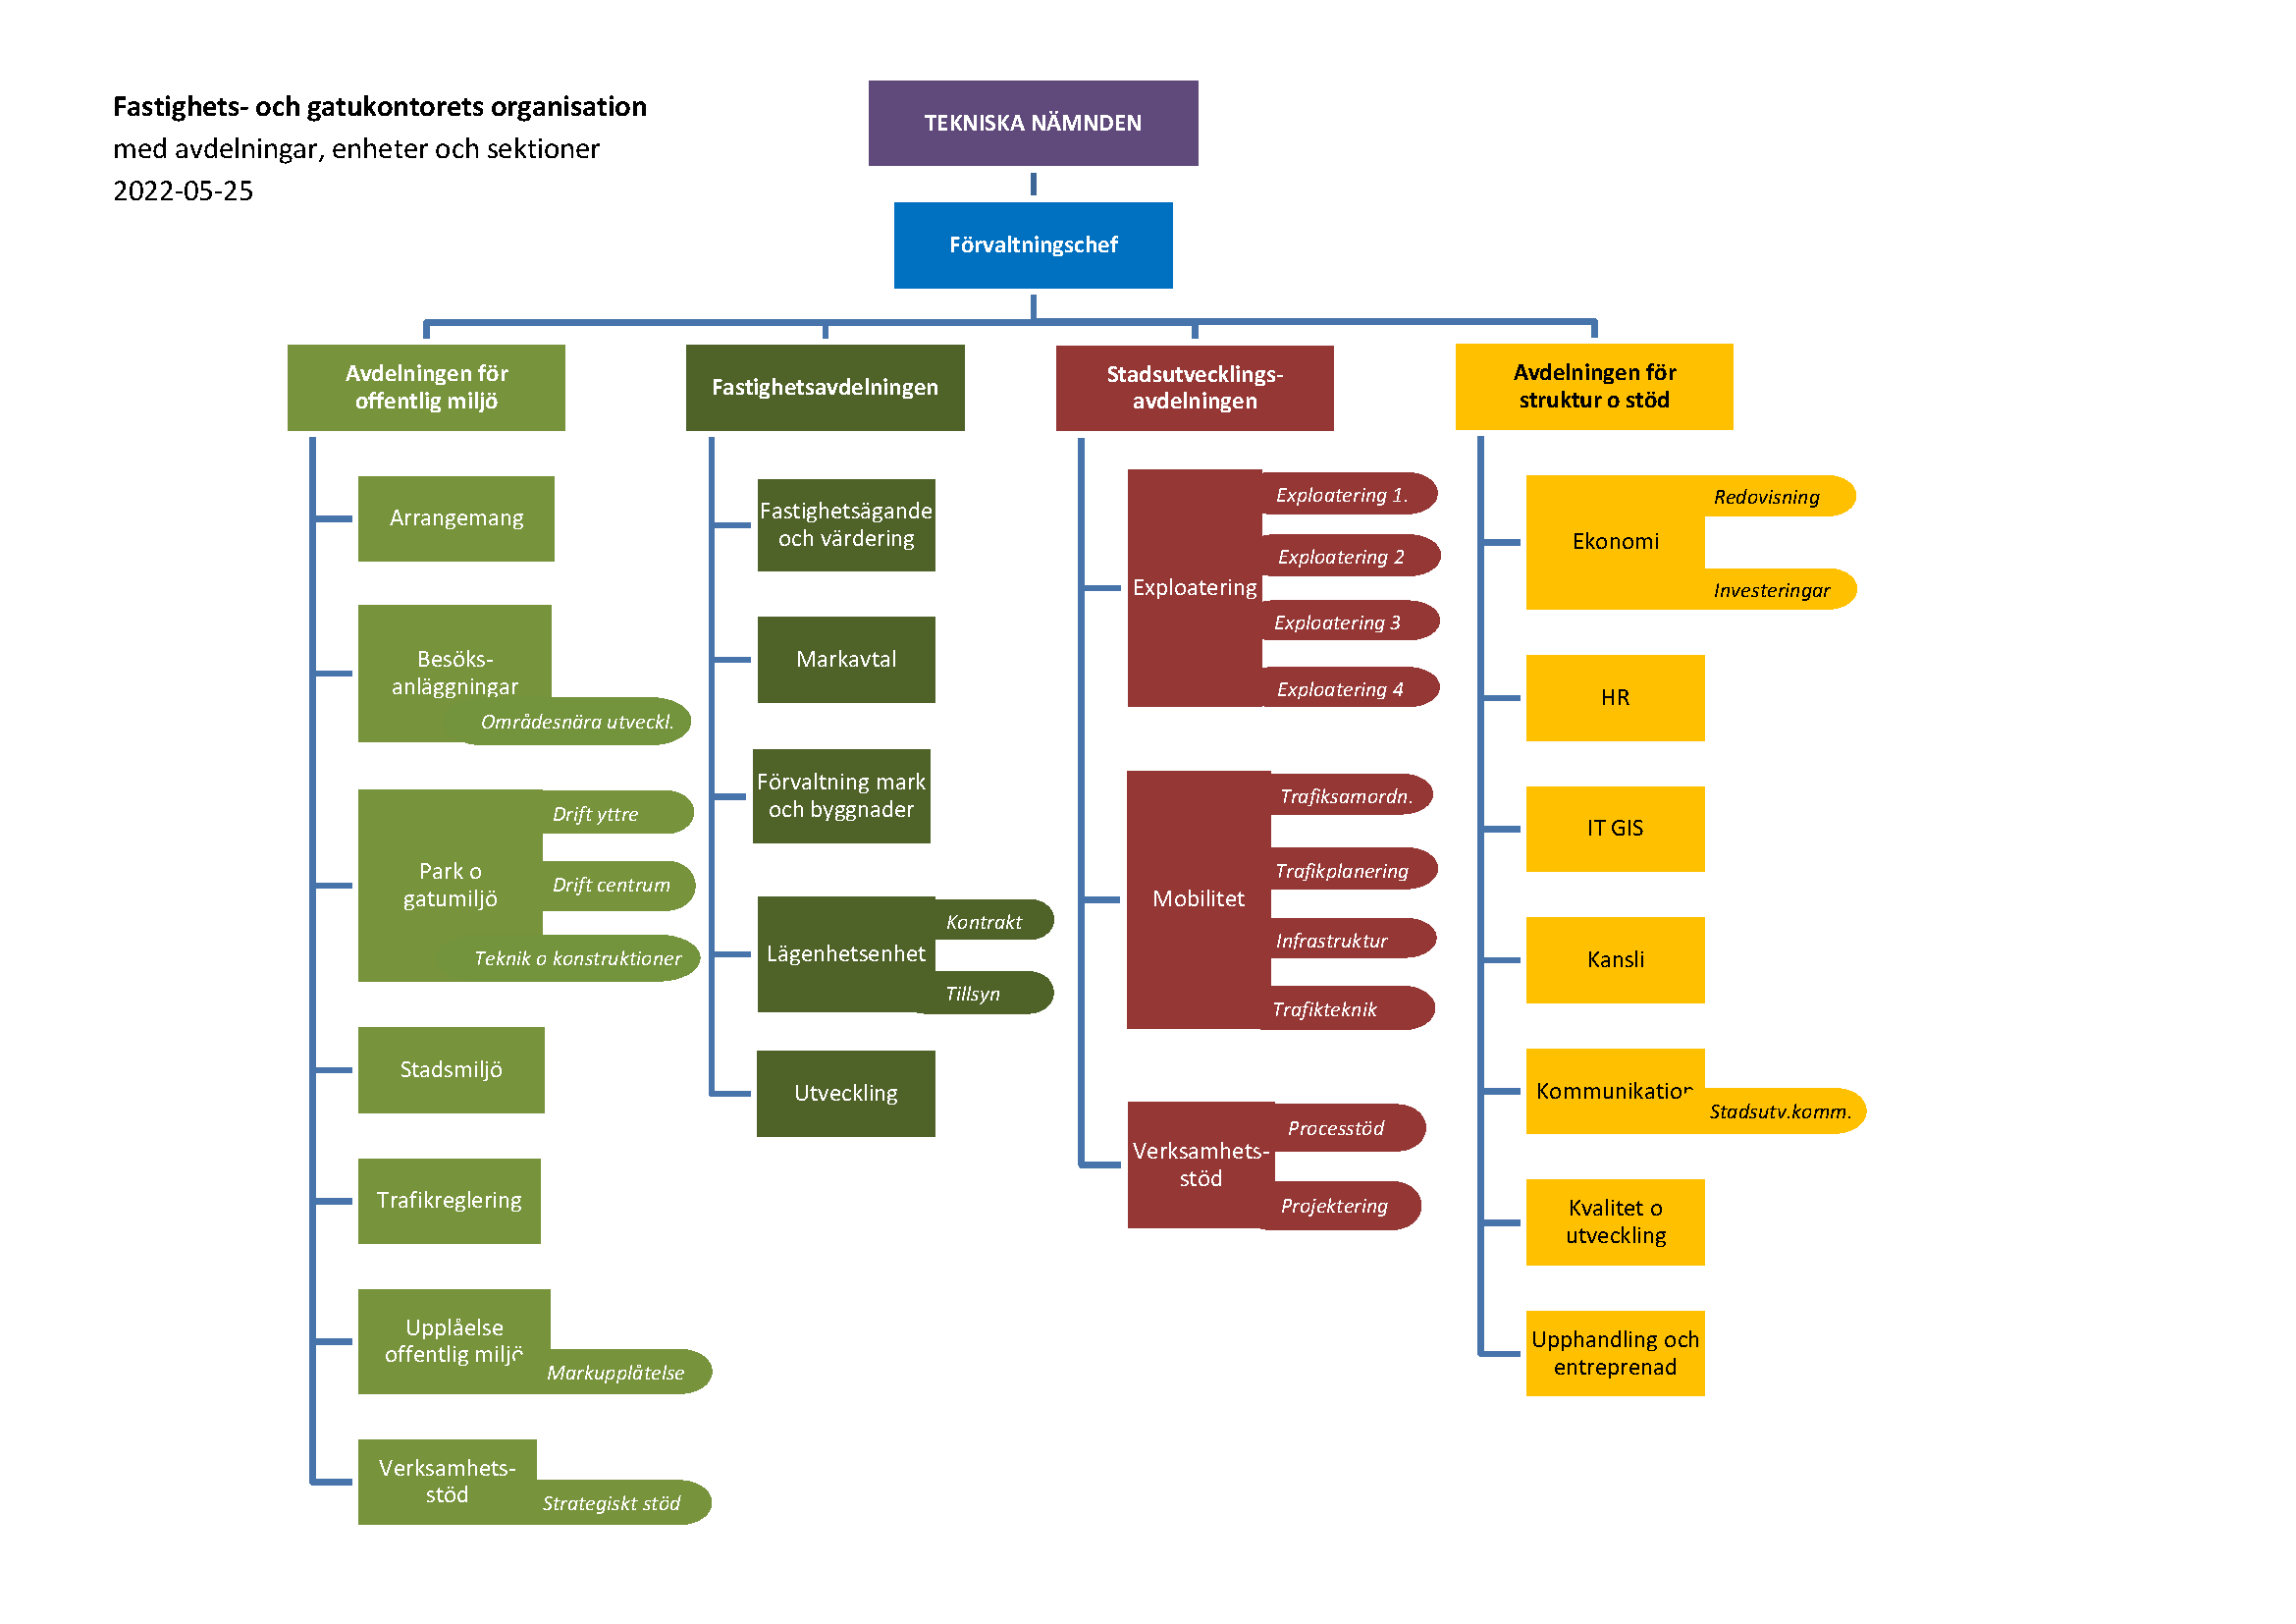 Organisationsschema över fastighets- och gatukontoret